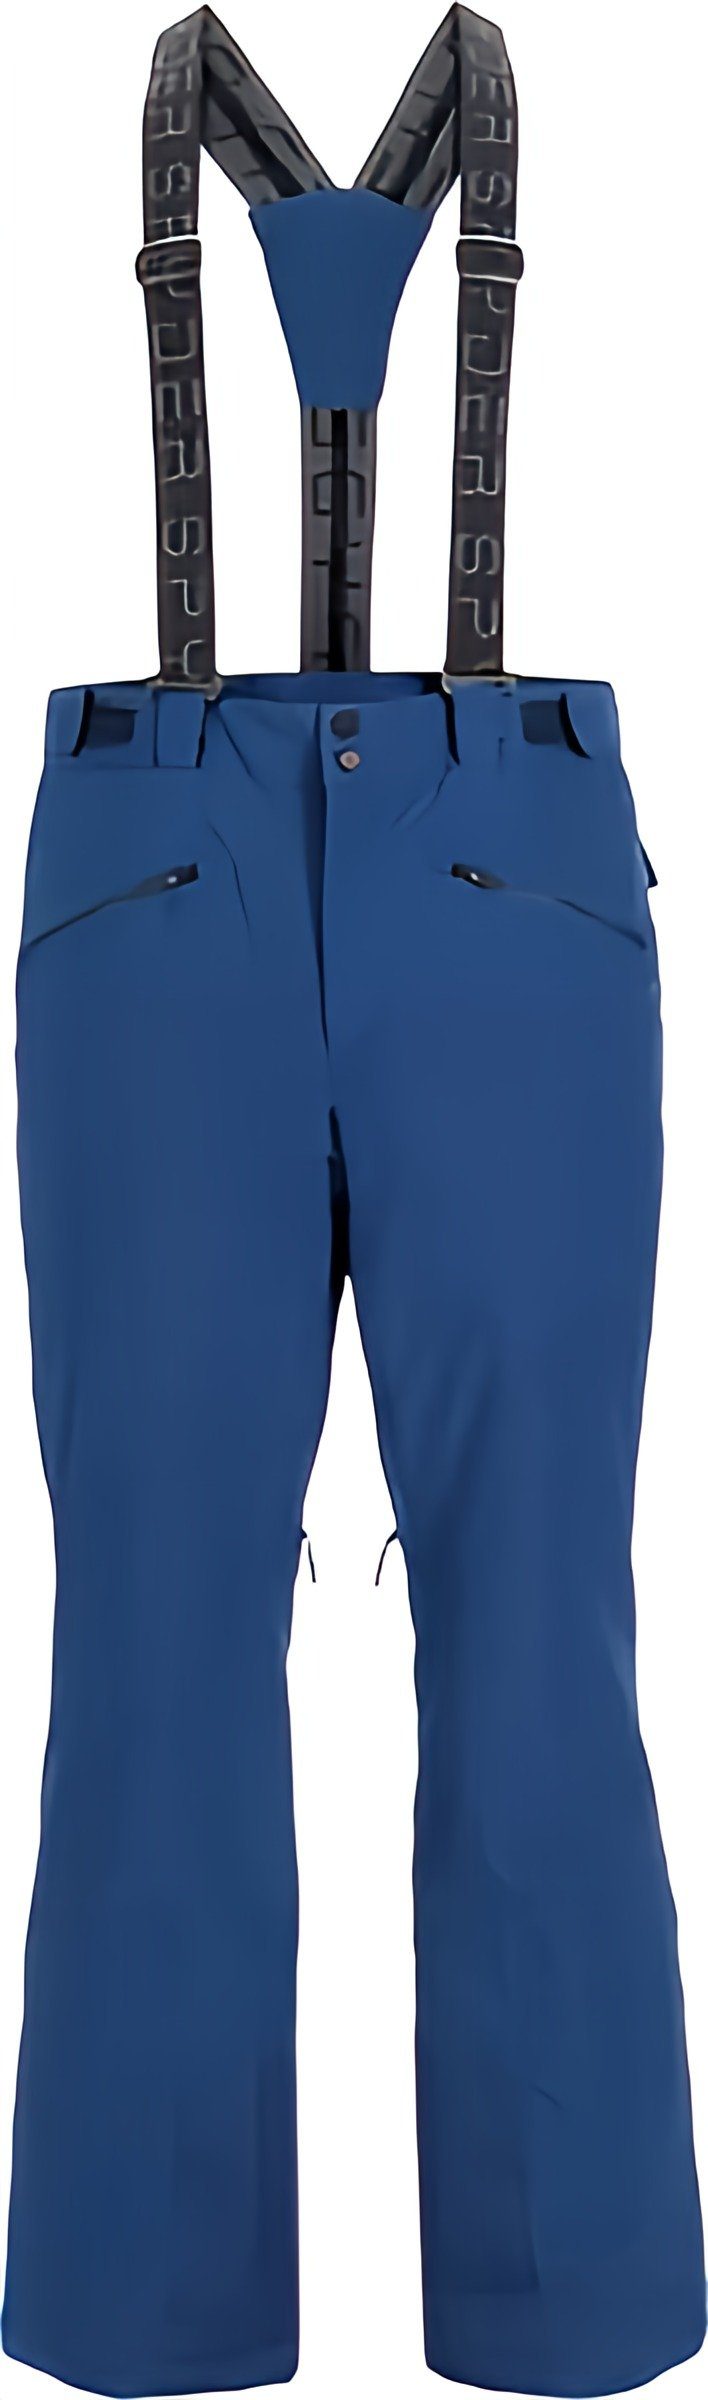 Spyder Skihose Sentinel Tailored Skihose für Herren - Farbe polar blau | Schneehosen